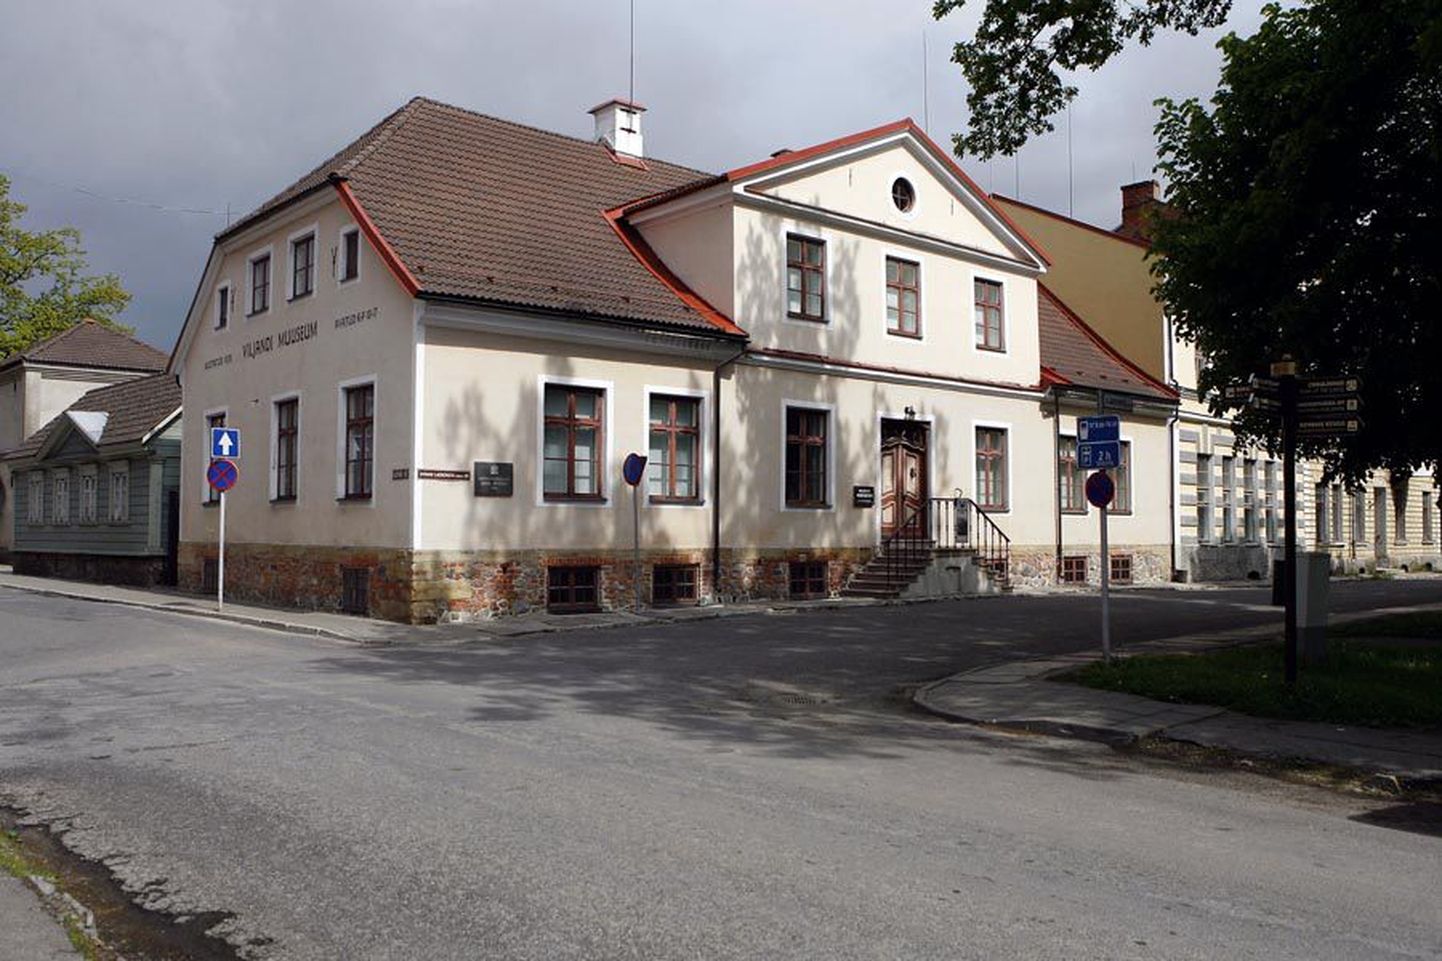 18. septembril kell 15 avatakse Viljandi muuseumis Eesti nukufilmi ajalugu tutvustav näitus.